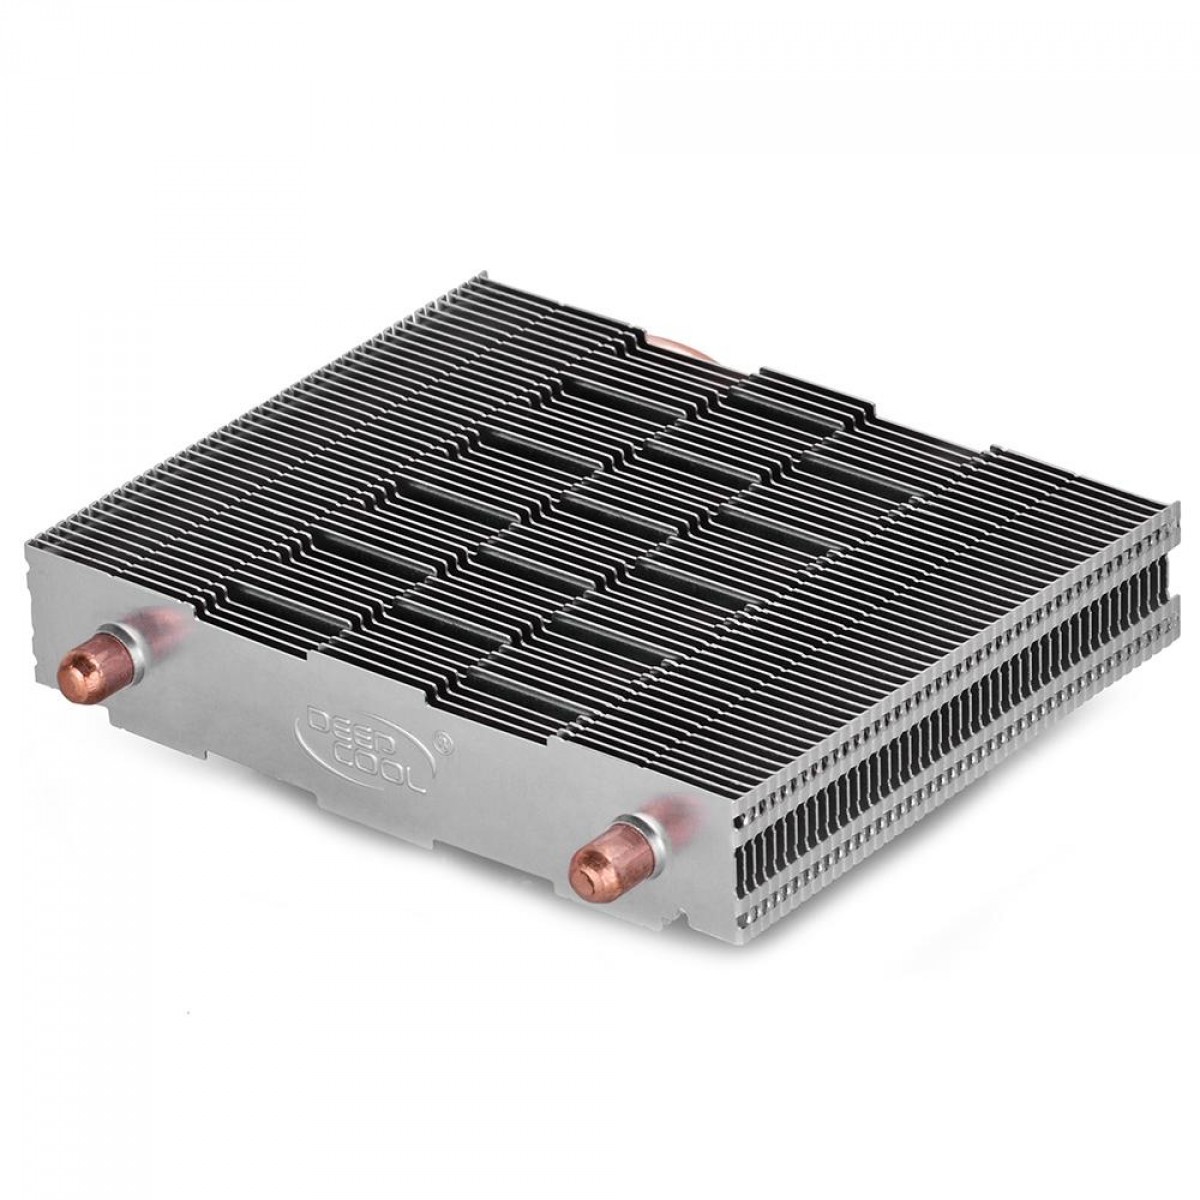 Cooler para Processador DeepCool HTPC-200, FAN RED, 80mm, Intel-AMD, DP-MCH28015-H200